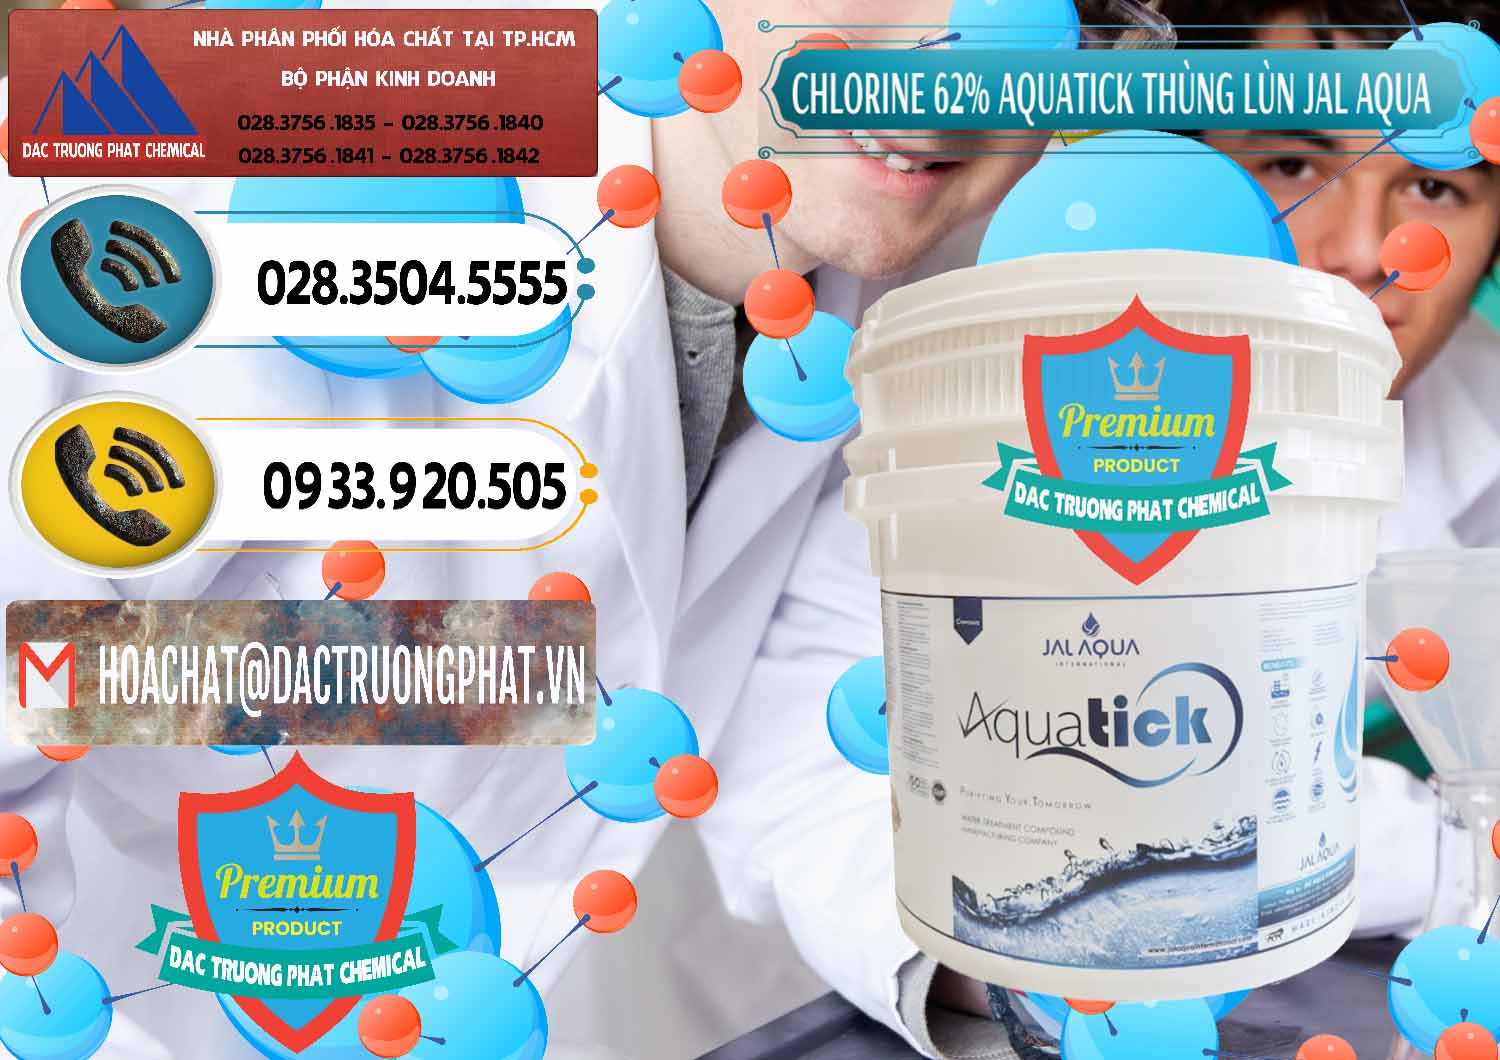 Cty chuyên cung cấp ( bán ) Chlorine – Clorin 62% Aquatick Thùng Lùn Jal Aqua Ấn Độ India - 0238 - Công ty chuyên kinh doanh - cung cấp hóa chất tại TP.HCM - hoachatdetnhuom.vn